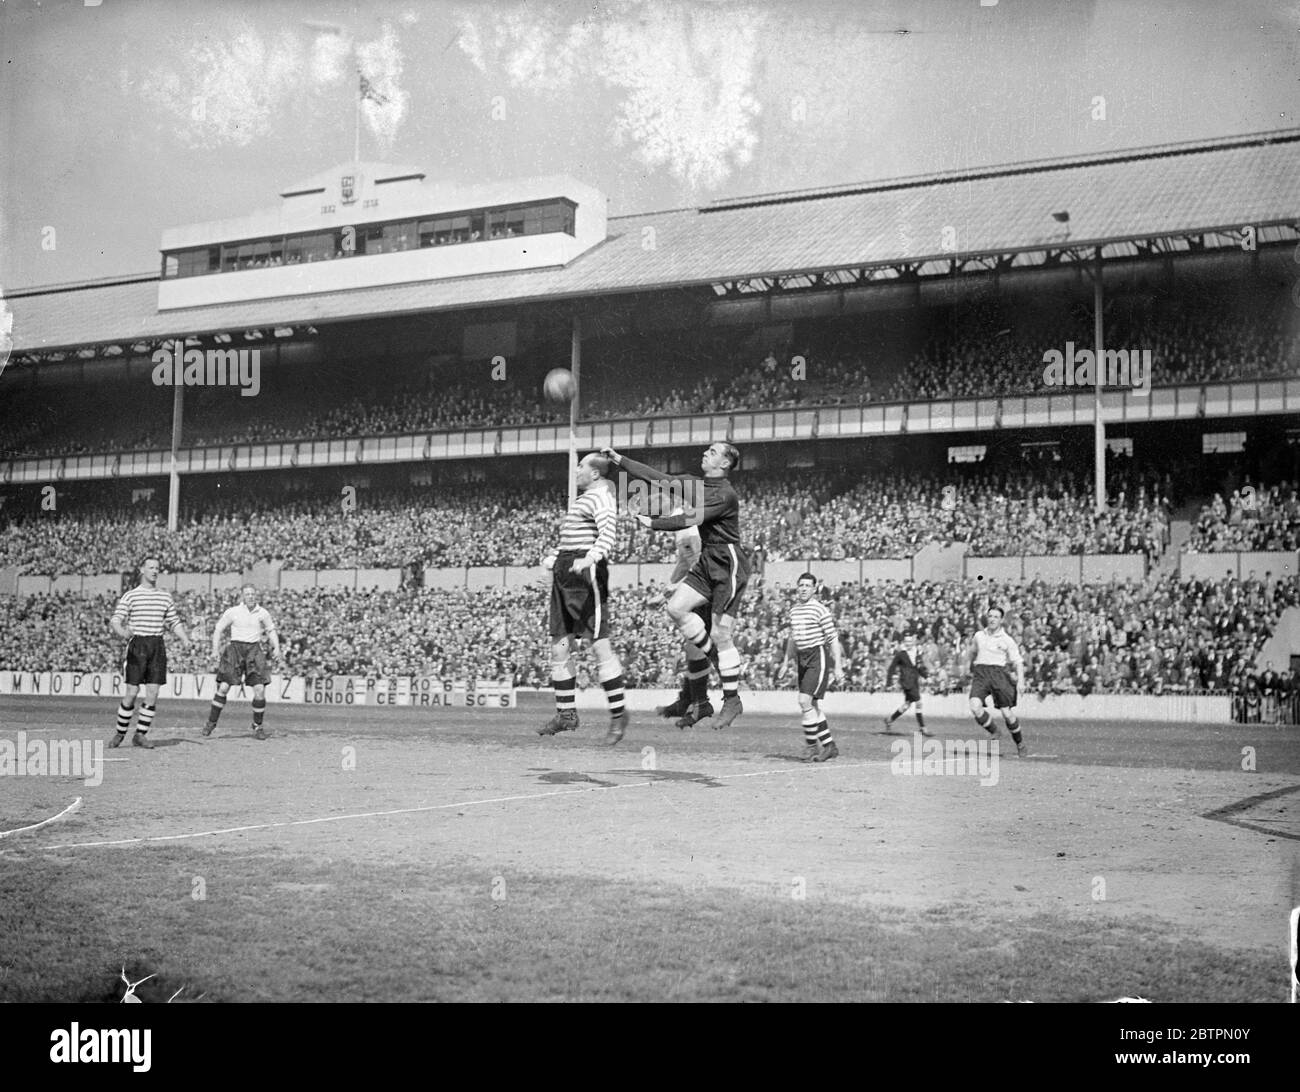 Voll auf Besuche Spurs. Tottenham Hotspur und Fulham trafen sich in Londons zweiter Division Derby in der White Hart Lane. Foto zeigt Tootill, Fulhams Torhüter, der vor Spurs-Attacke klar schlug. Sporen in Weiß. 24. April 1937 Stockfoto